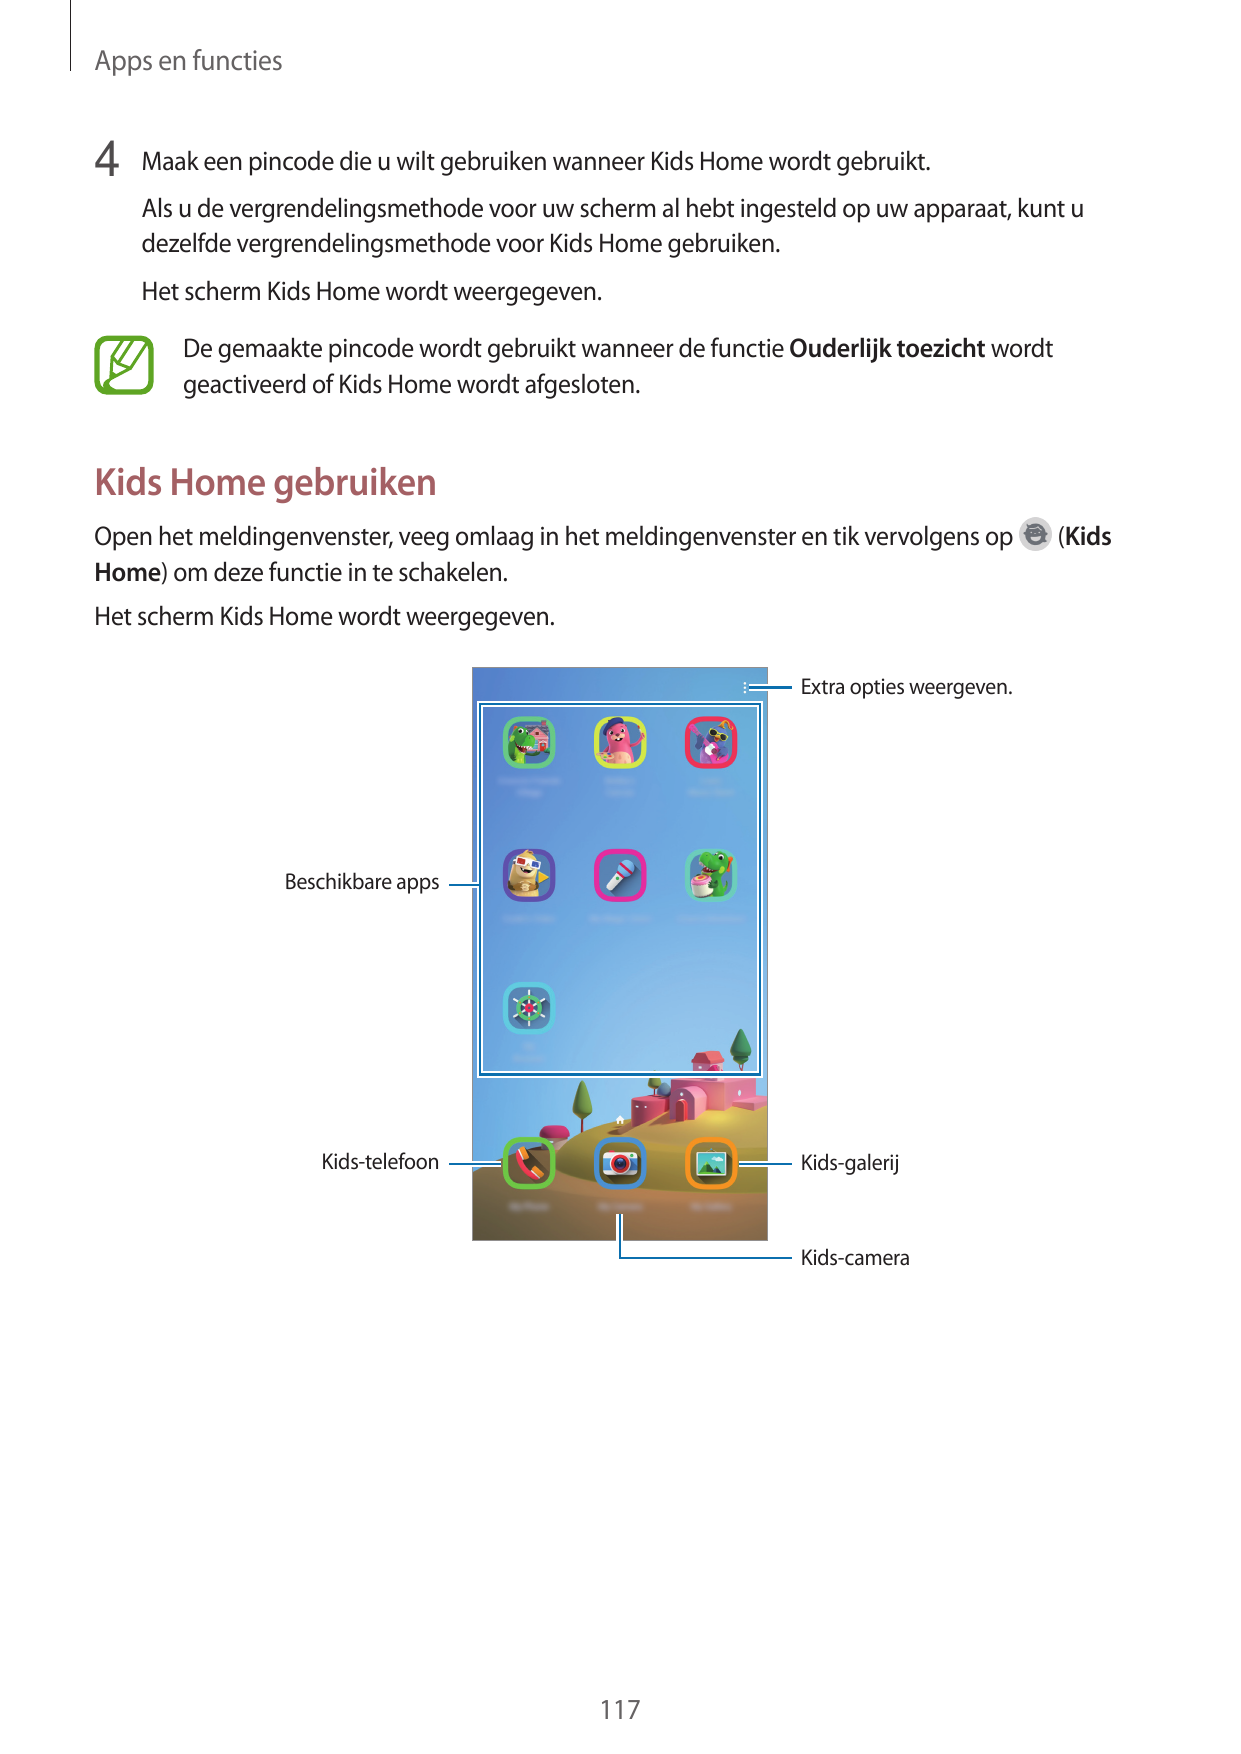 Apps en functies4 Maak een pincode die u wilt gebruiken wanneer Kids Home wordt gebruikt.Als u de vergrendelingsmethode voor uw 